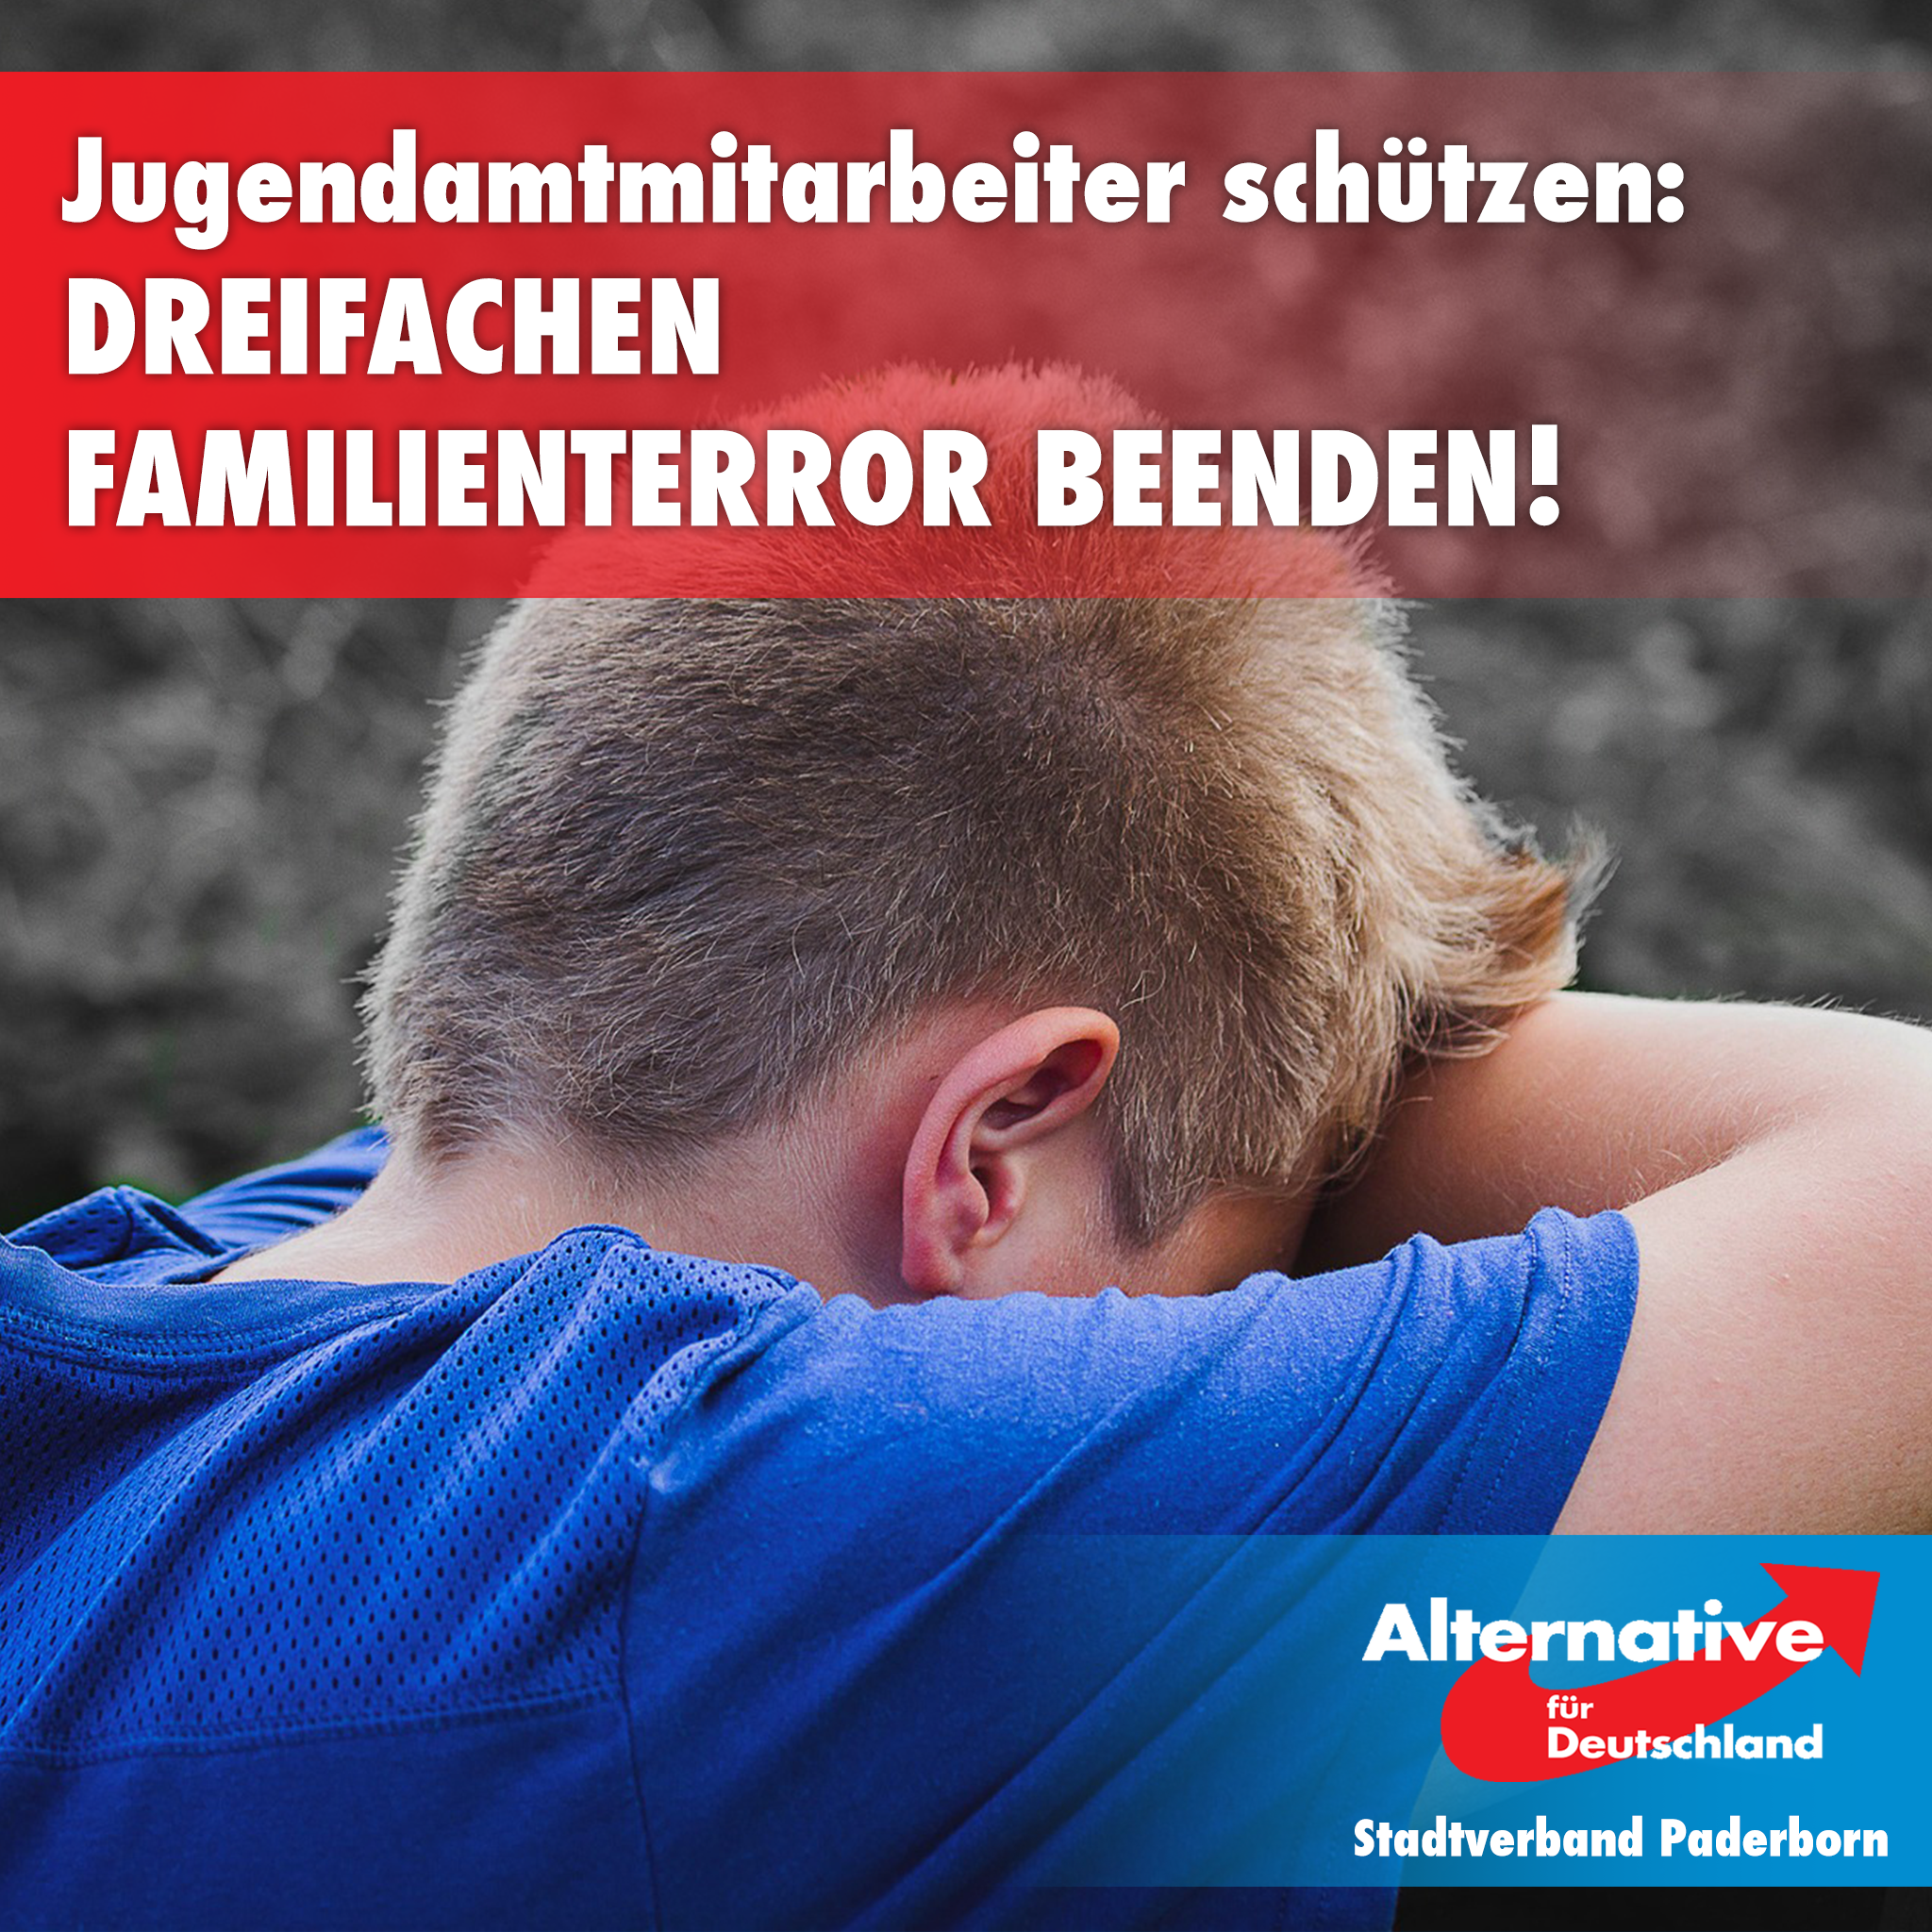 You are currently viewing Kampf ums Kindwohl: Dreifachen Familienterror beenden – Jugendamtmitarbeiter schützen!